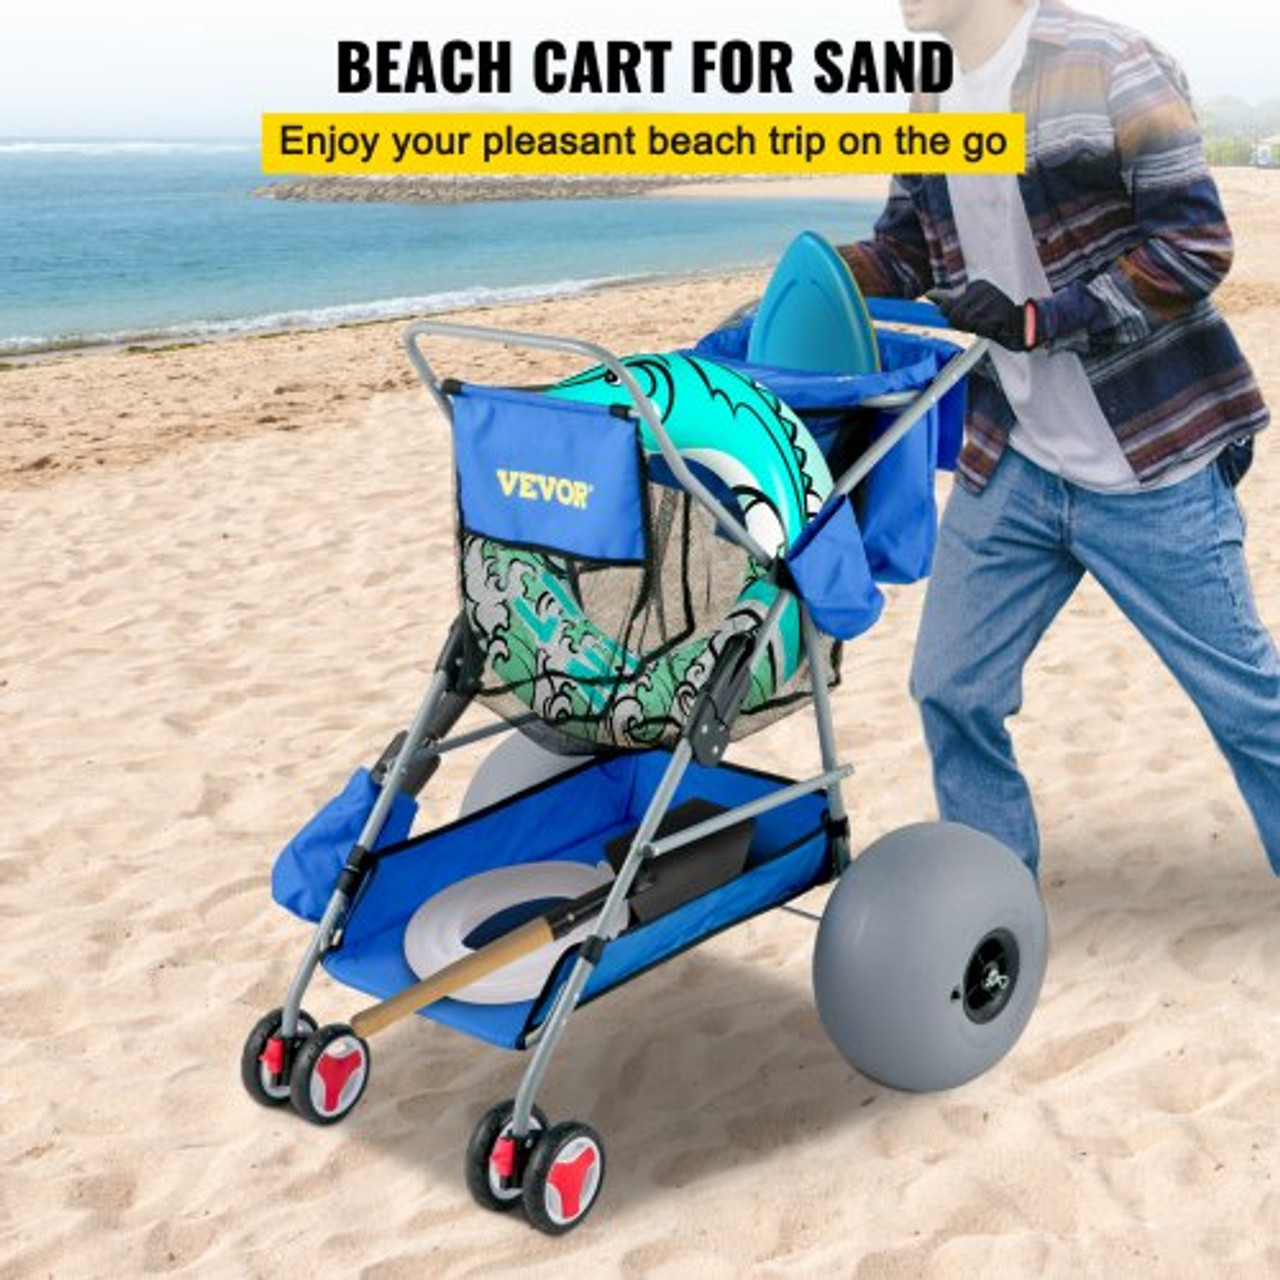 Beach Wonder Wheeler, 12" All-Terrain Balloon Wheels, 350 lbs Beach Cart for Sand, Beach Buggy w/ Flip Flop Holder, Storage Bag, 2 Beach Chair Holders, Blue